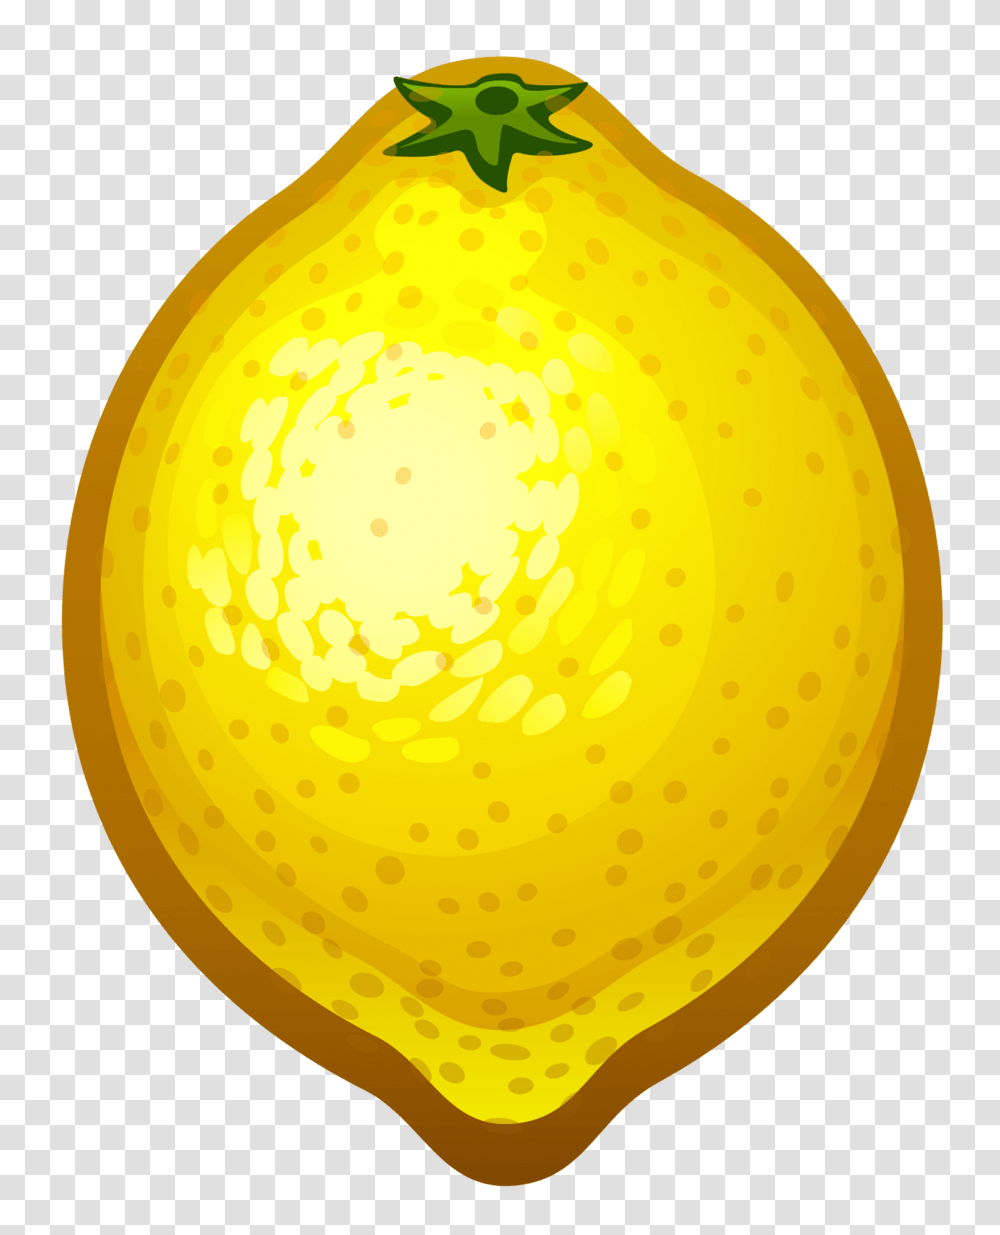 Lemon Pictures Clip Art Images, Plant, Citrus Fruit, Food, Pear Transparent Png